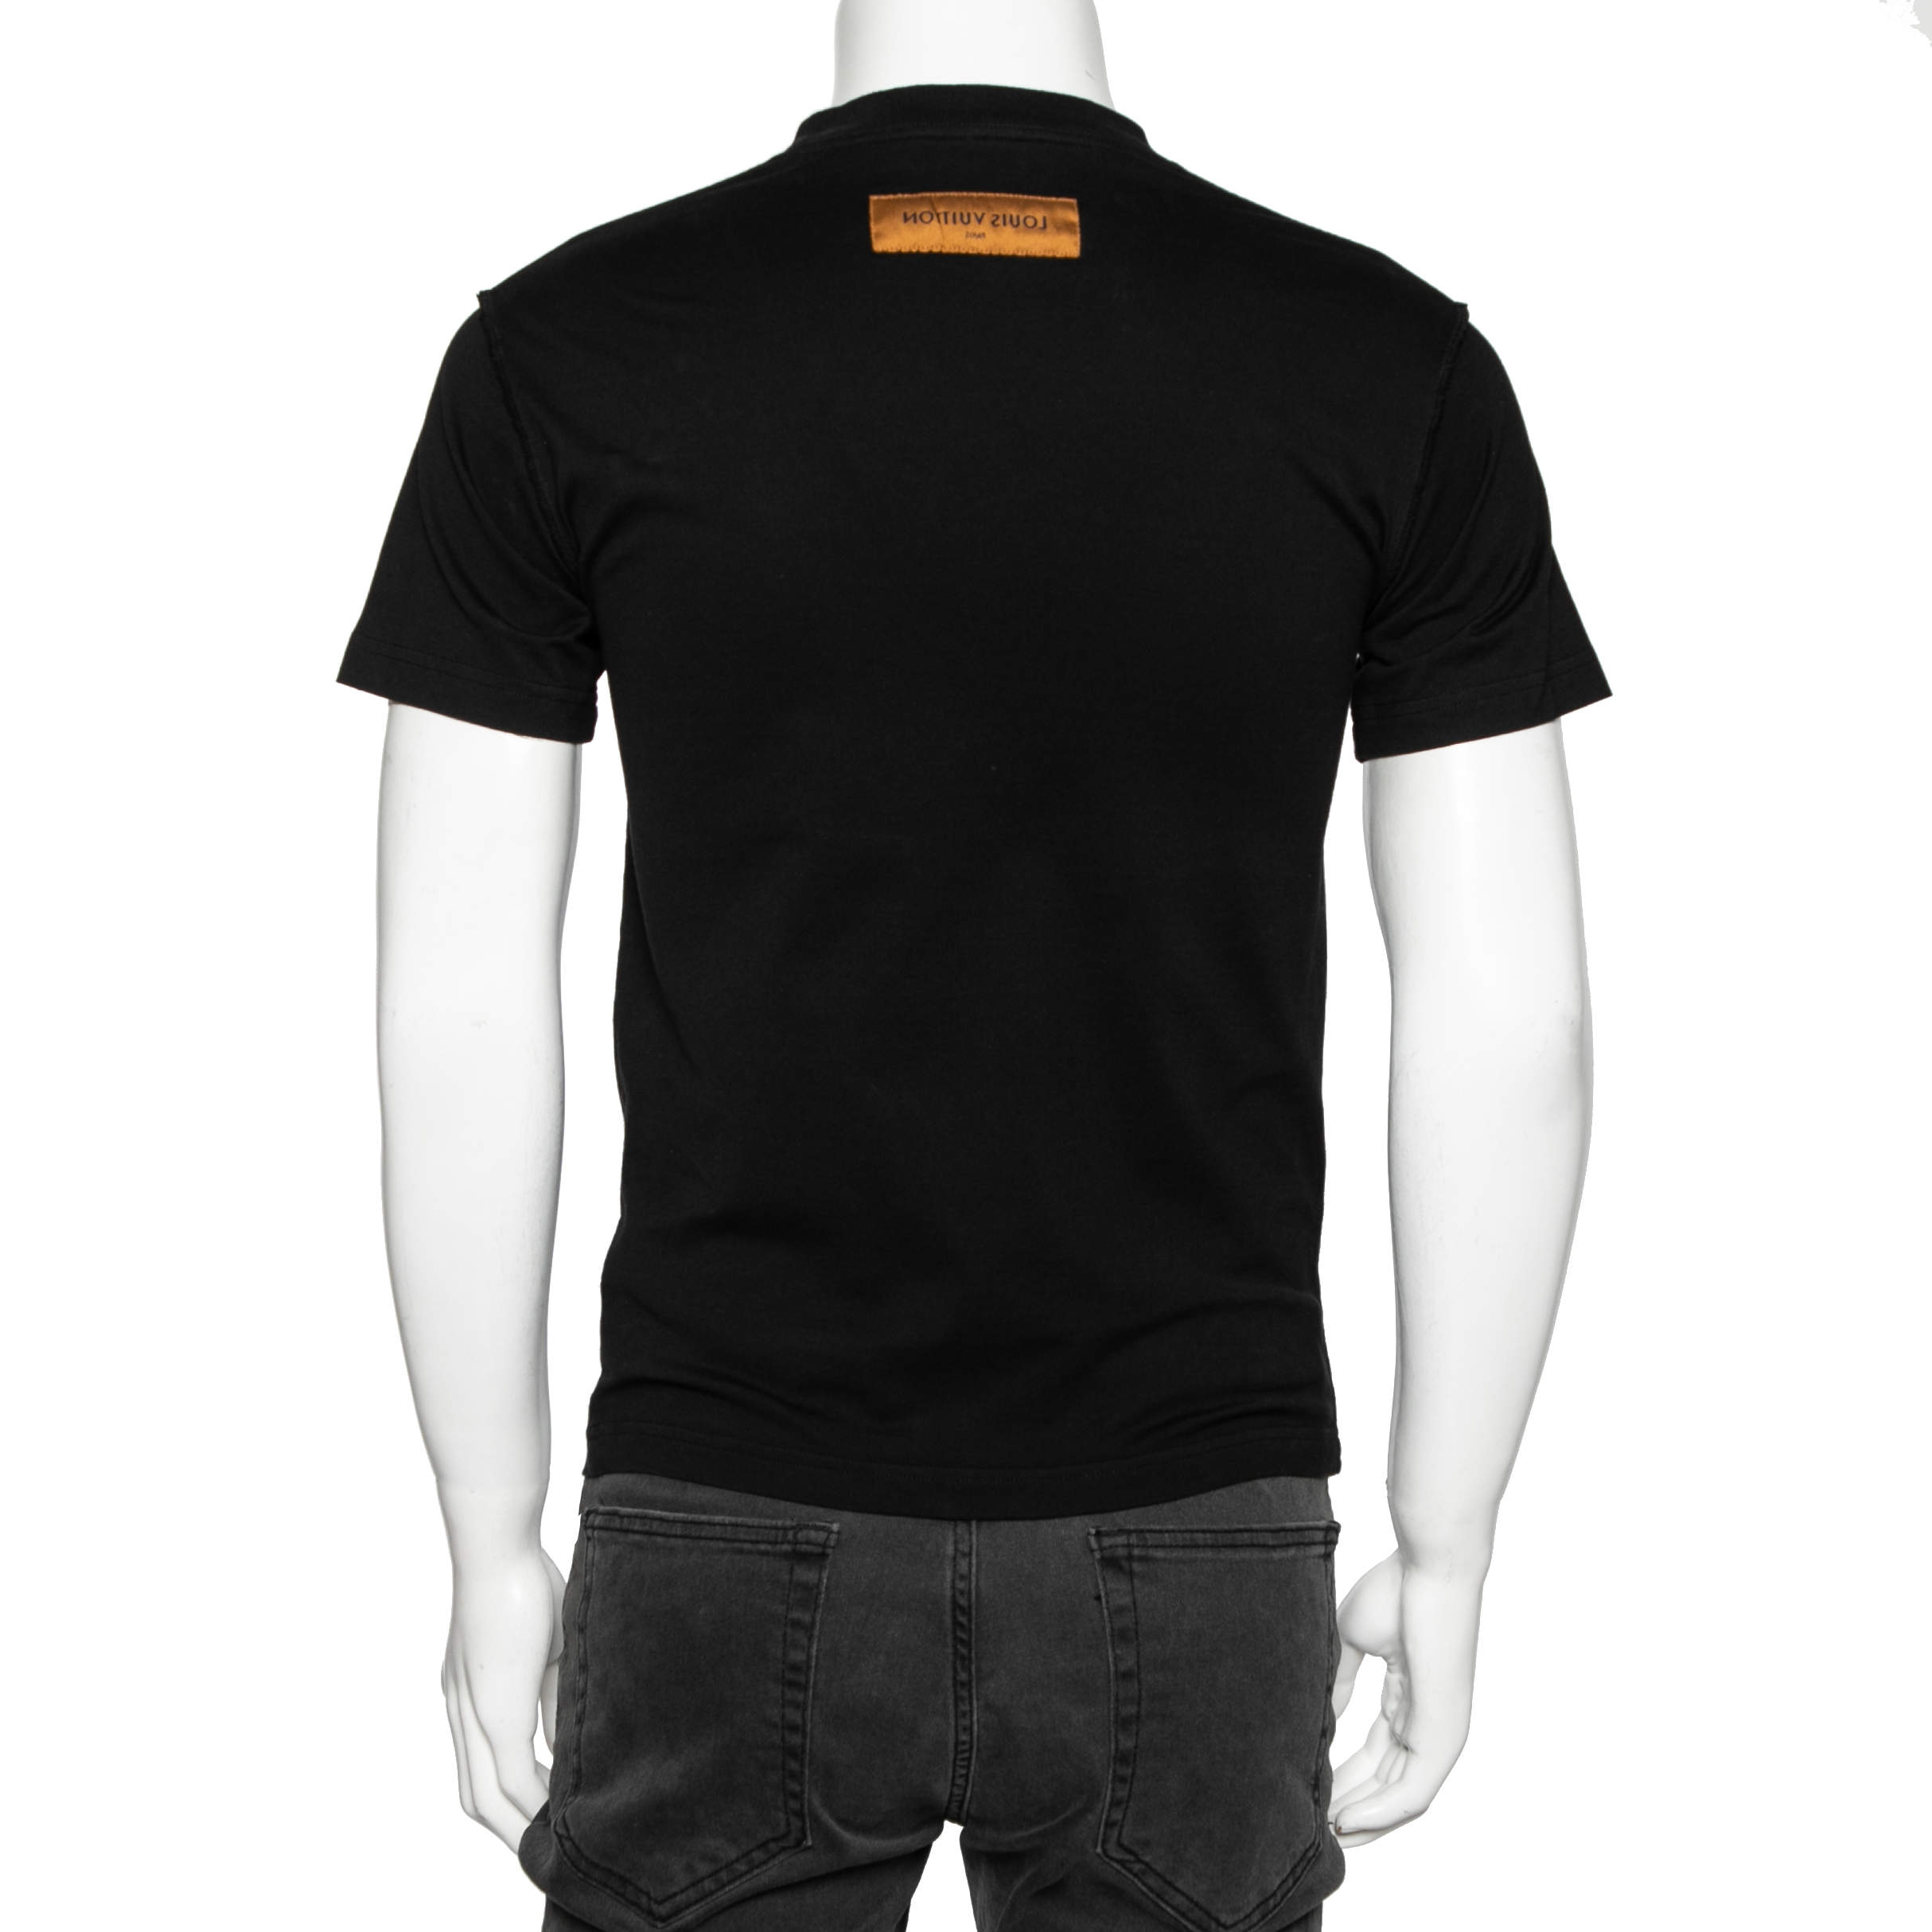 LOUIS VUITTON LOUIS VUITTON Short sleeve T-shirt cotton Black Used mens  logo size S